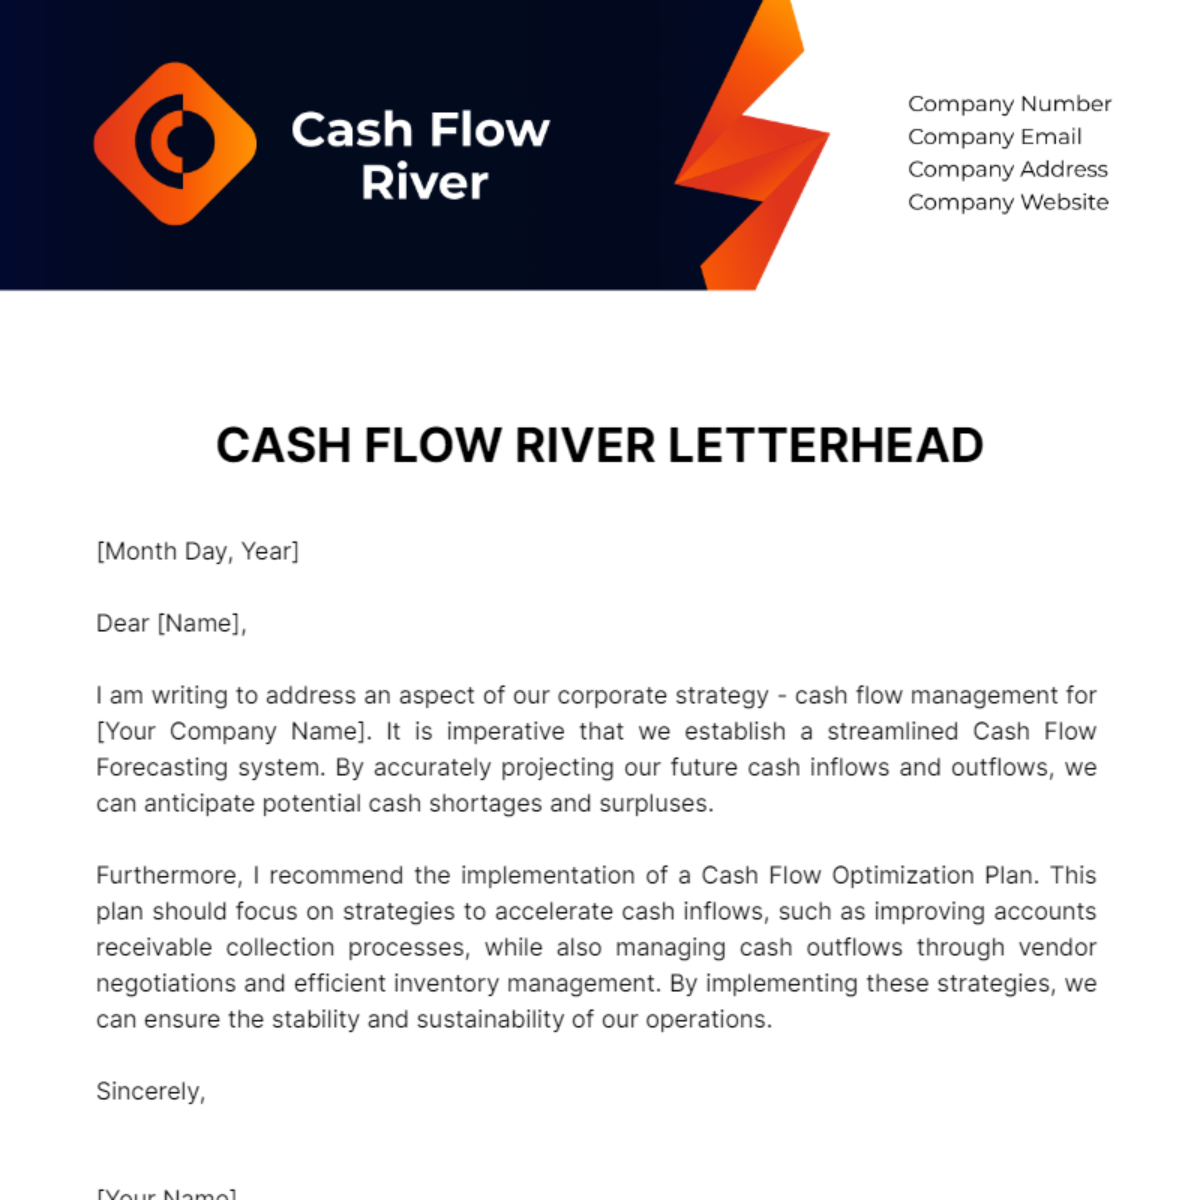 Cash Flow River Letterhead Template